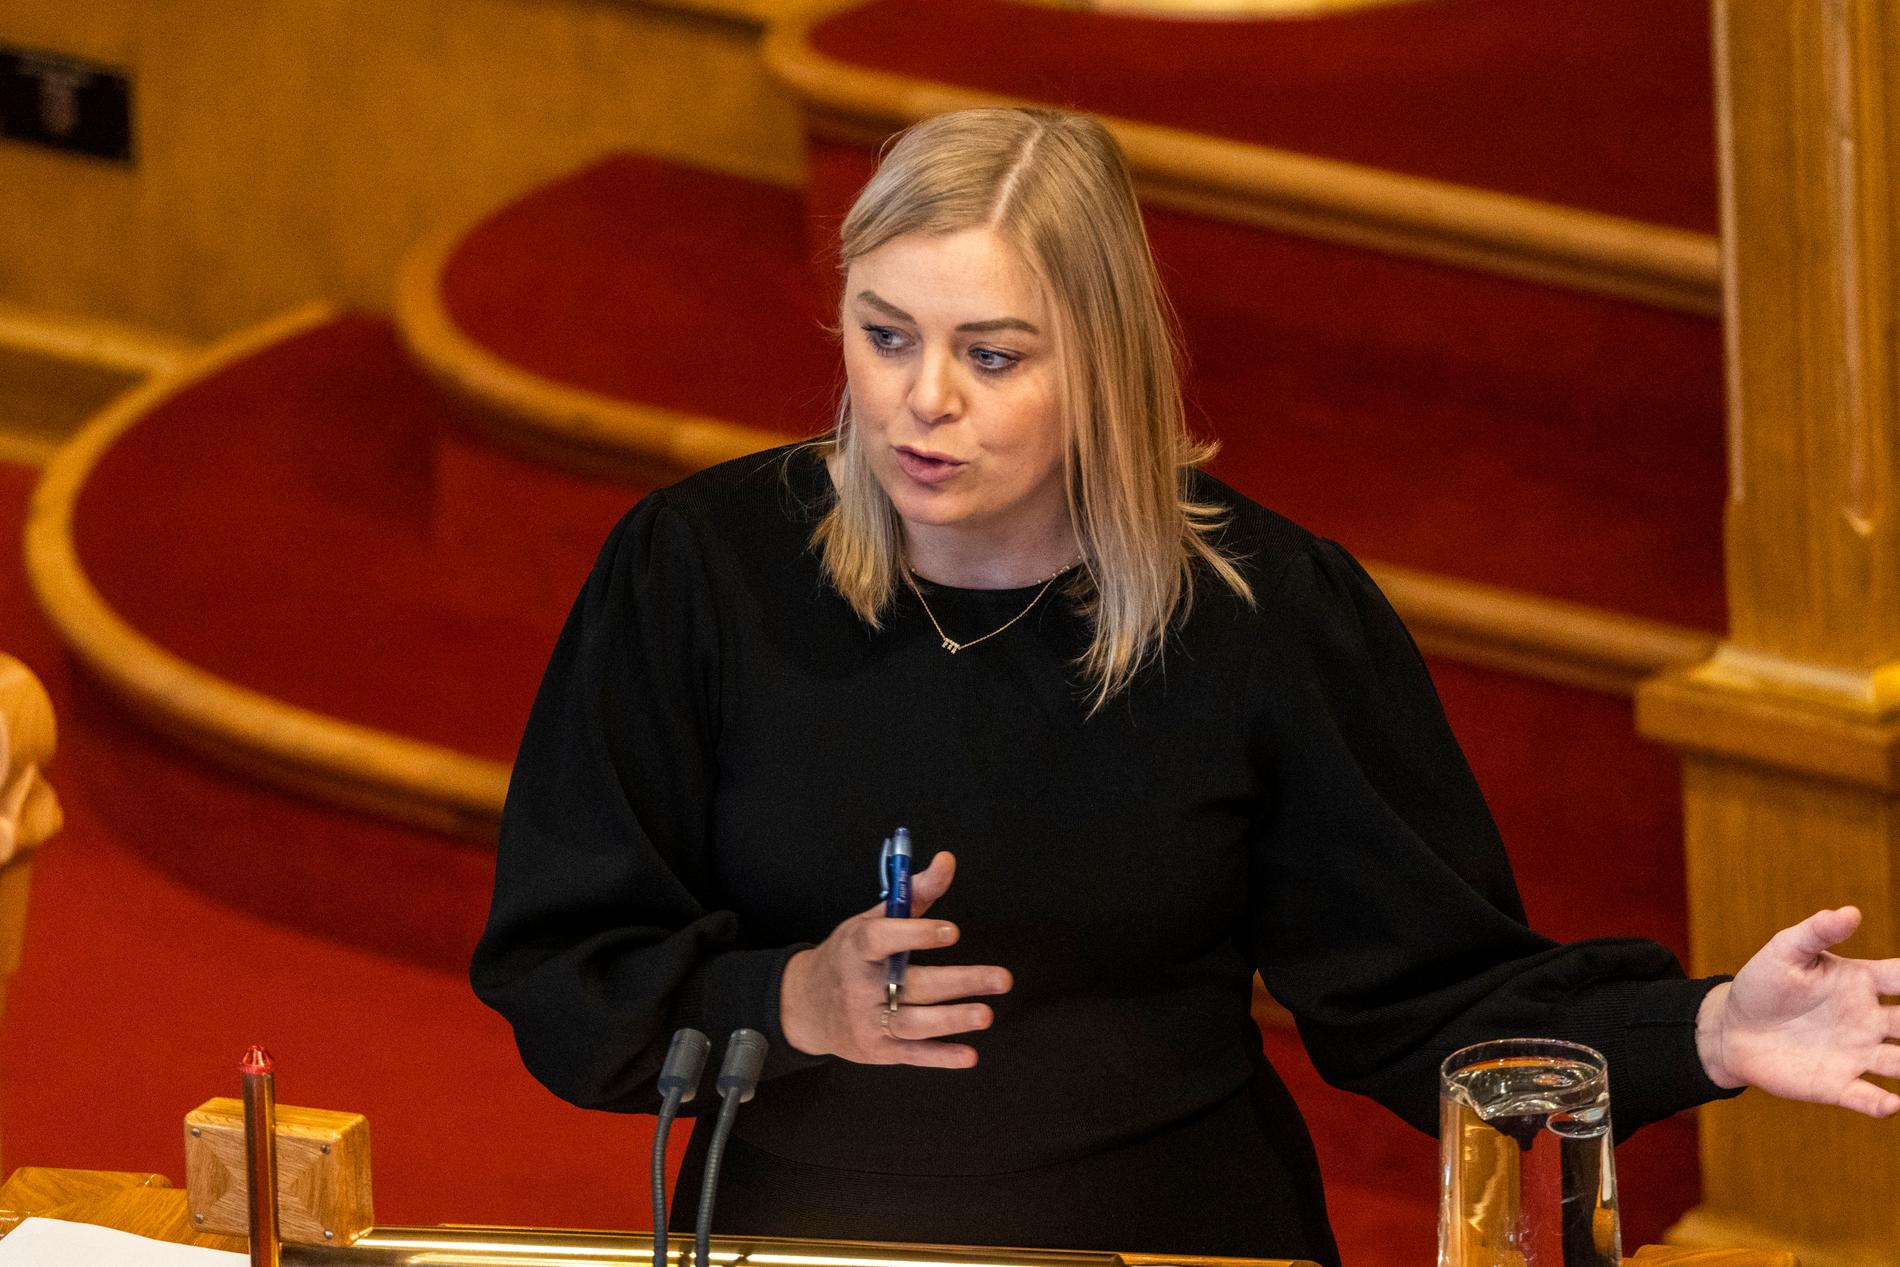 Nestleder i Høyre, Tina Bru, er tilbake fra foreldrepermisjon og måtte svare i NRKs politisk kvarter fredag morgen.